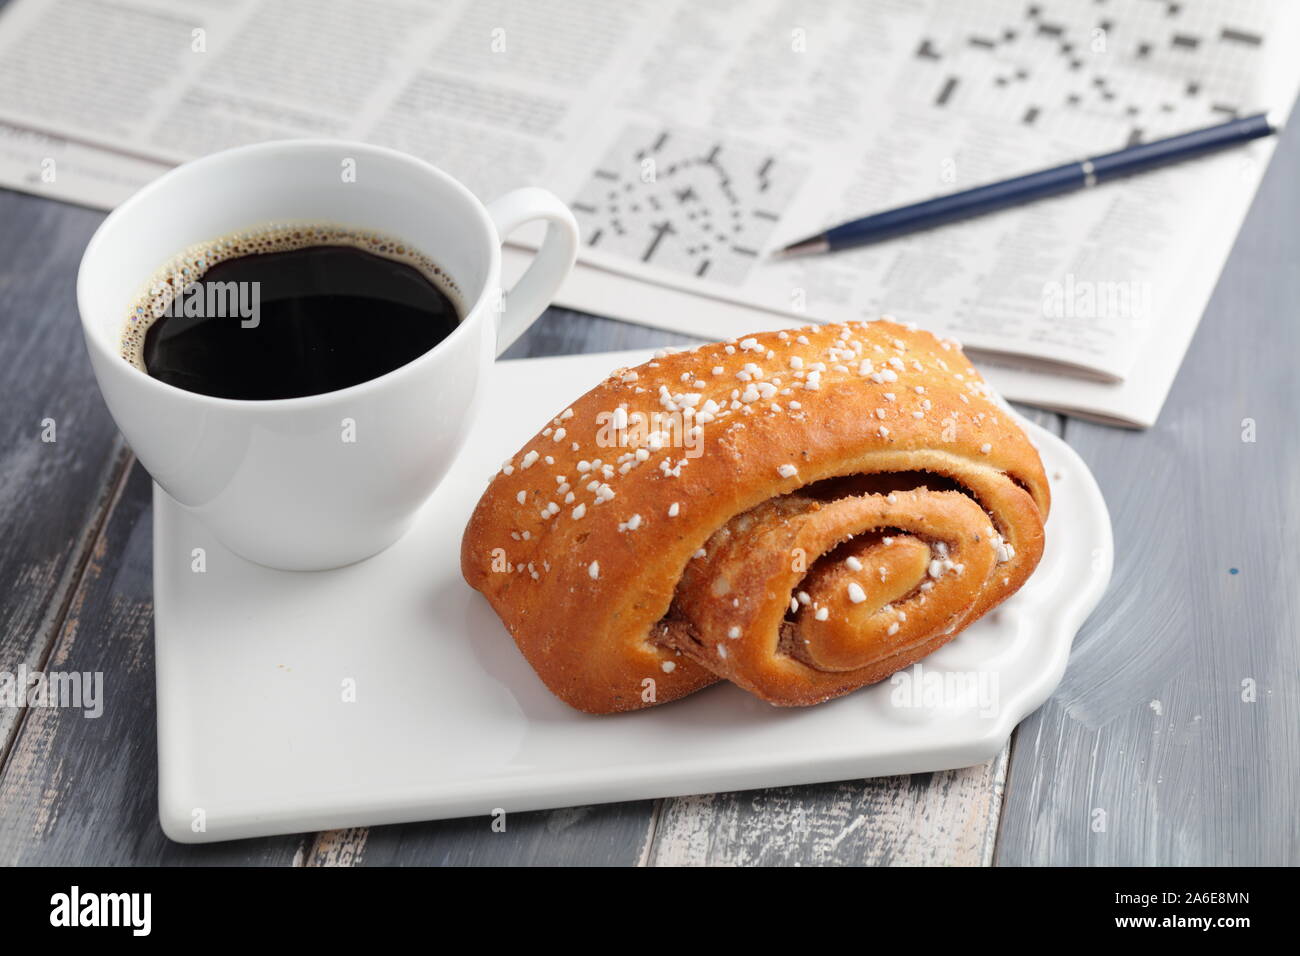 Gâteau suédois à la cannelle et une tasse de café noir contre un journal avec mots croisés Banque D'Images